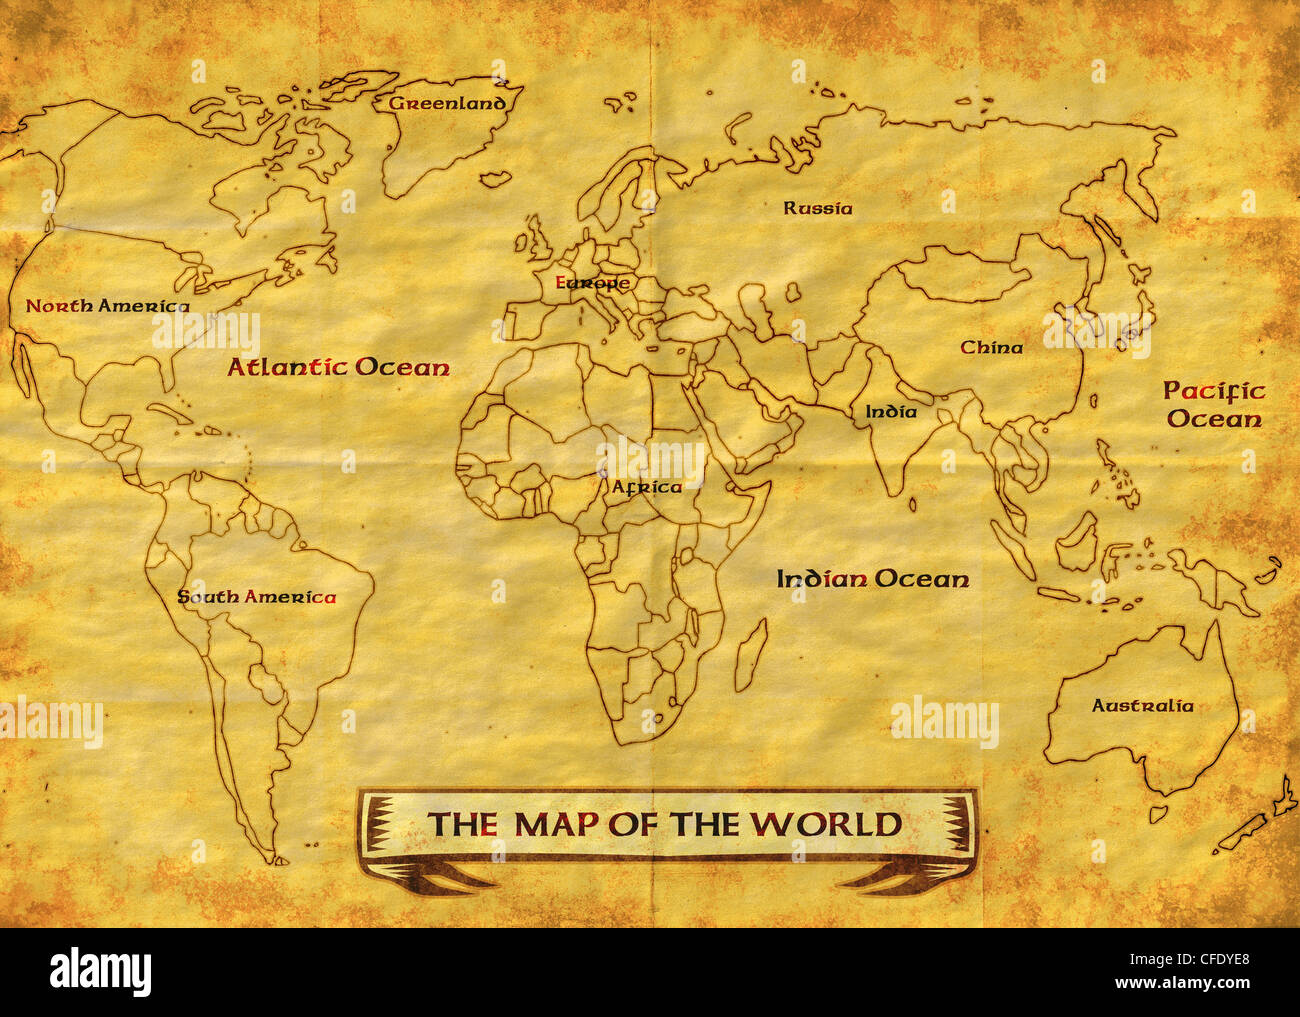 Illustration dessin d'une carte du monde montrant les continents nord,Afrique,europe,Asie et Australie grunge texture background Banque D'Images